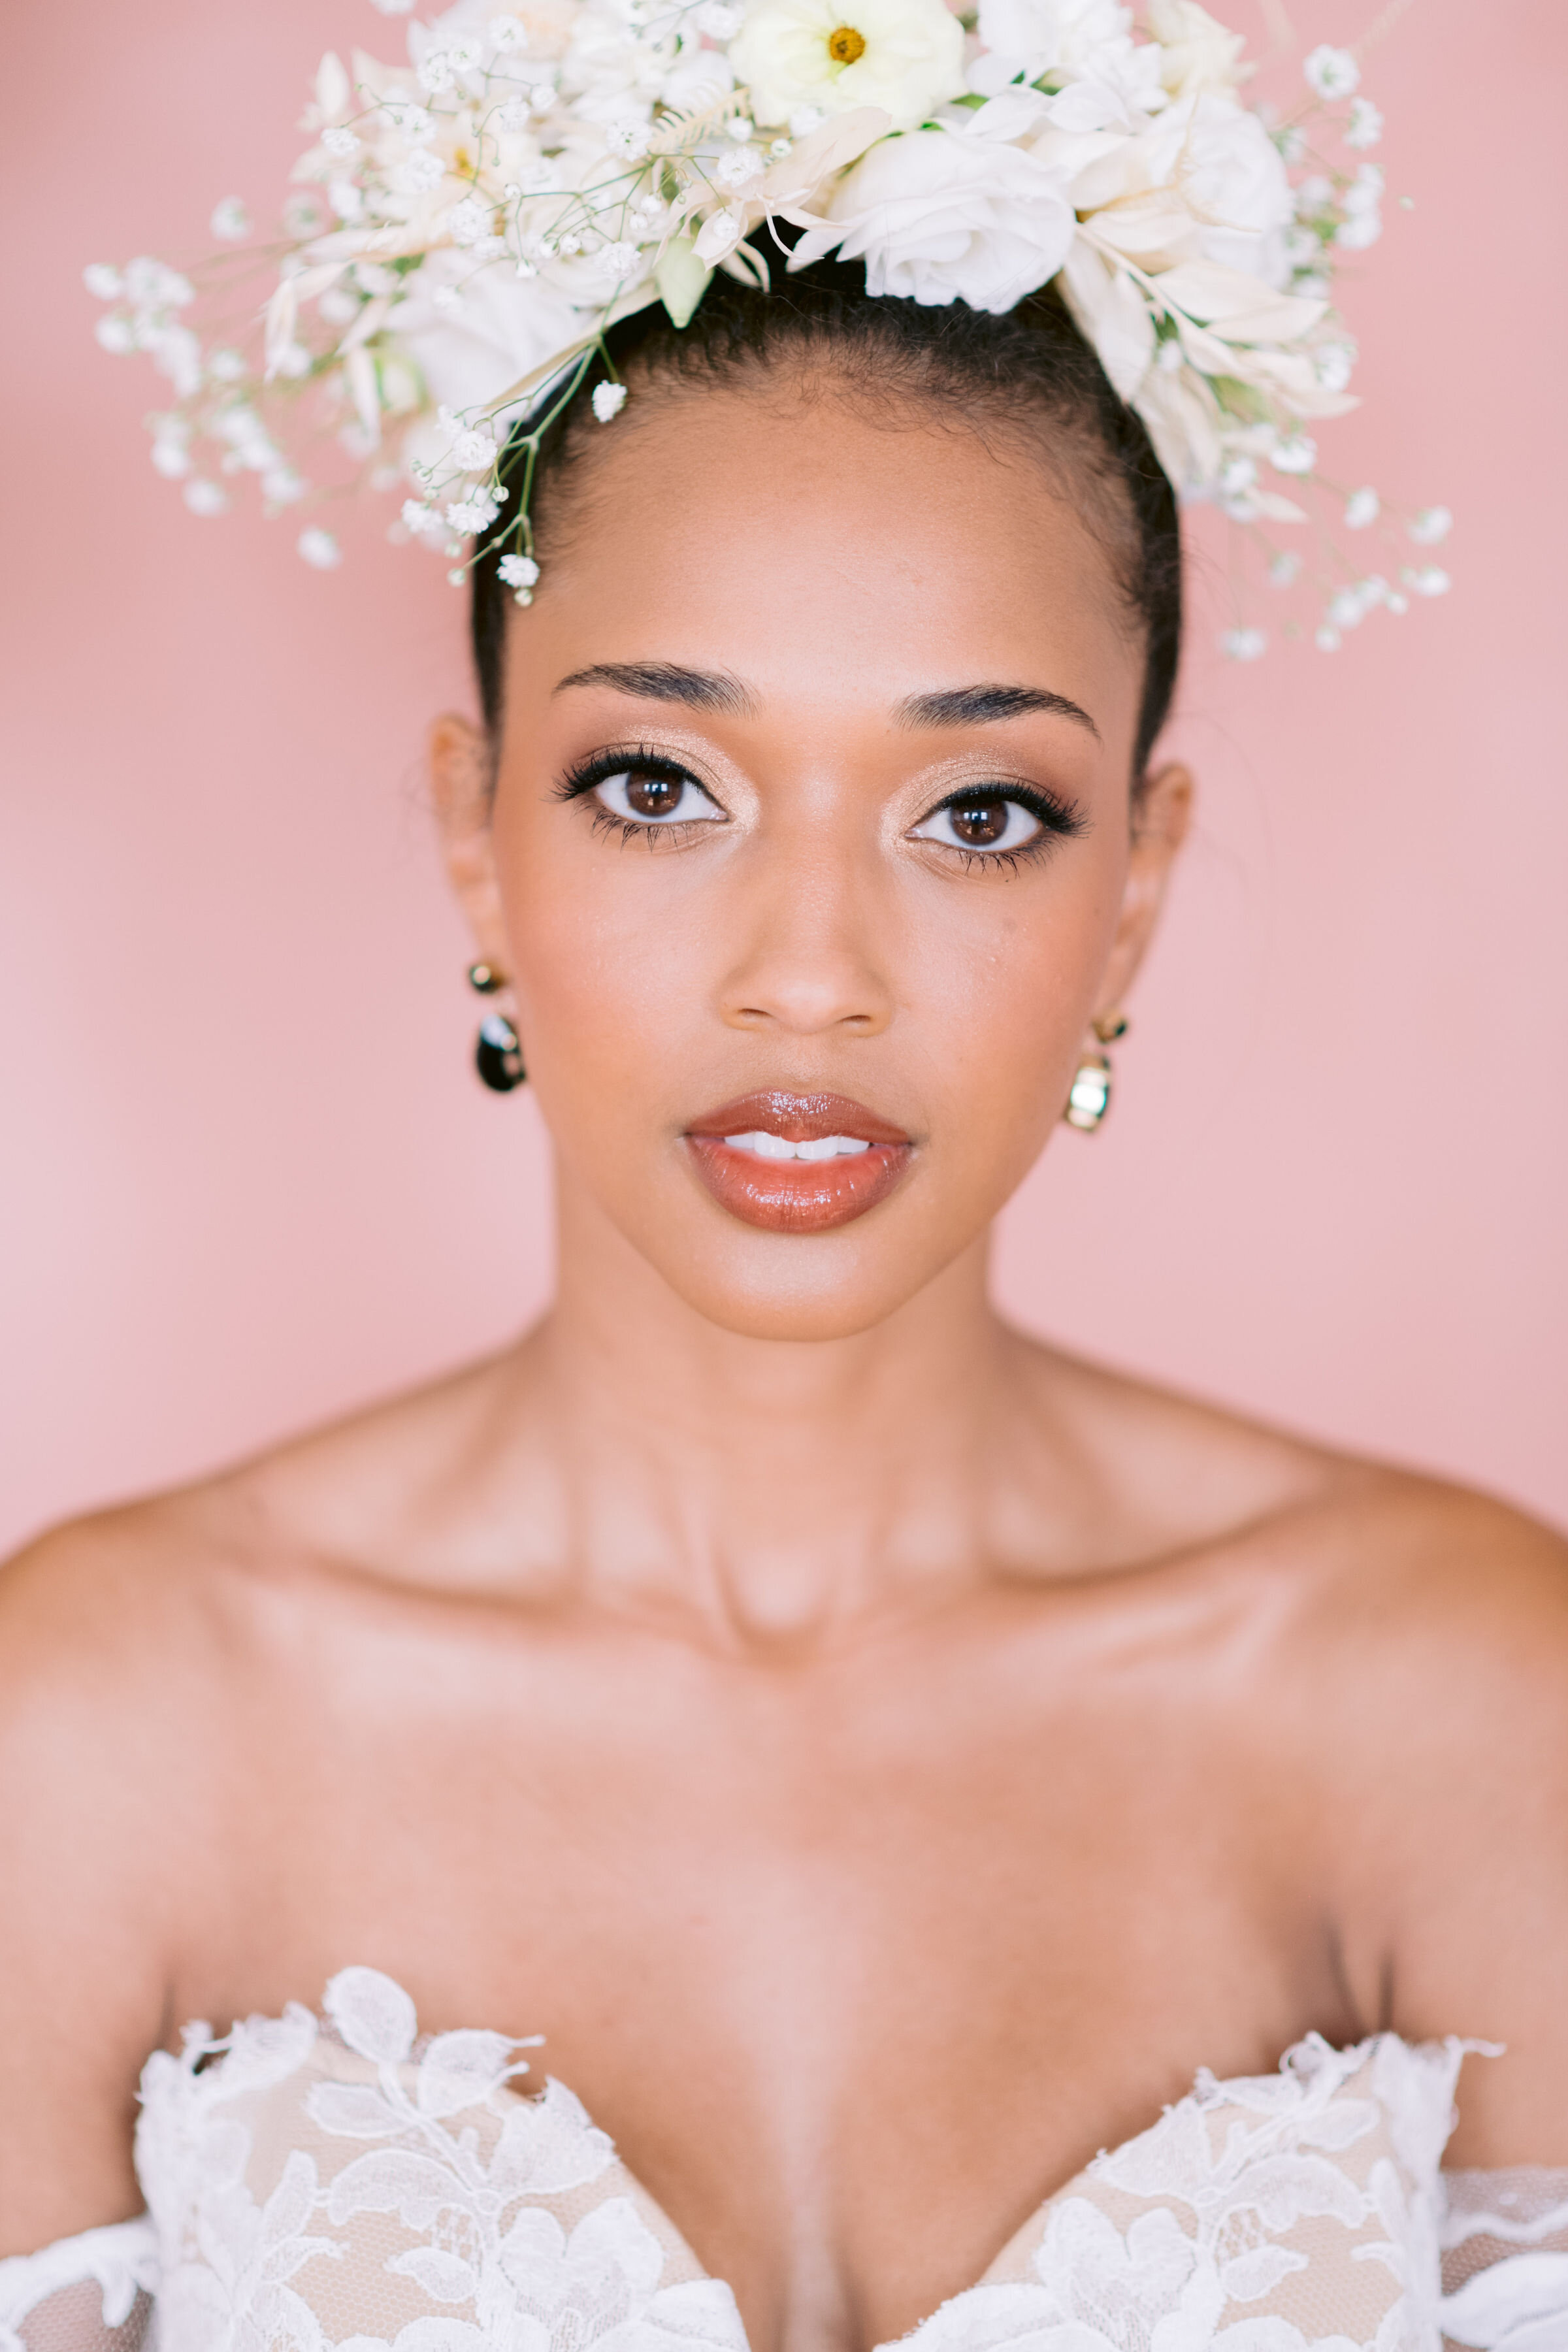 Smokey Eye Wedding Makeup: Your Guide to Stunning Bridal Glam